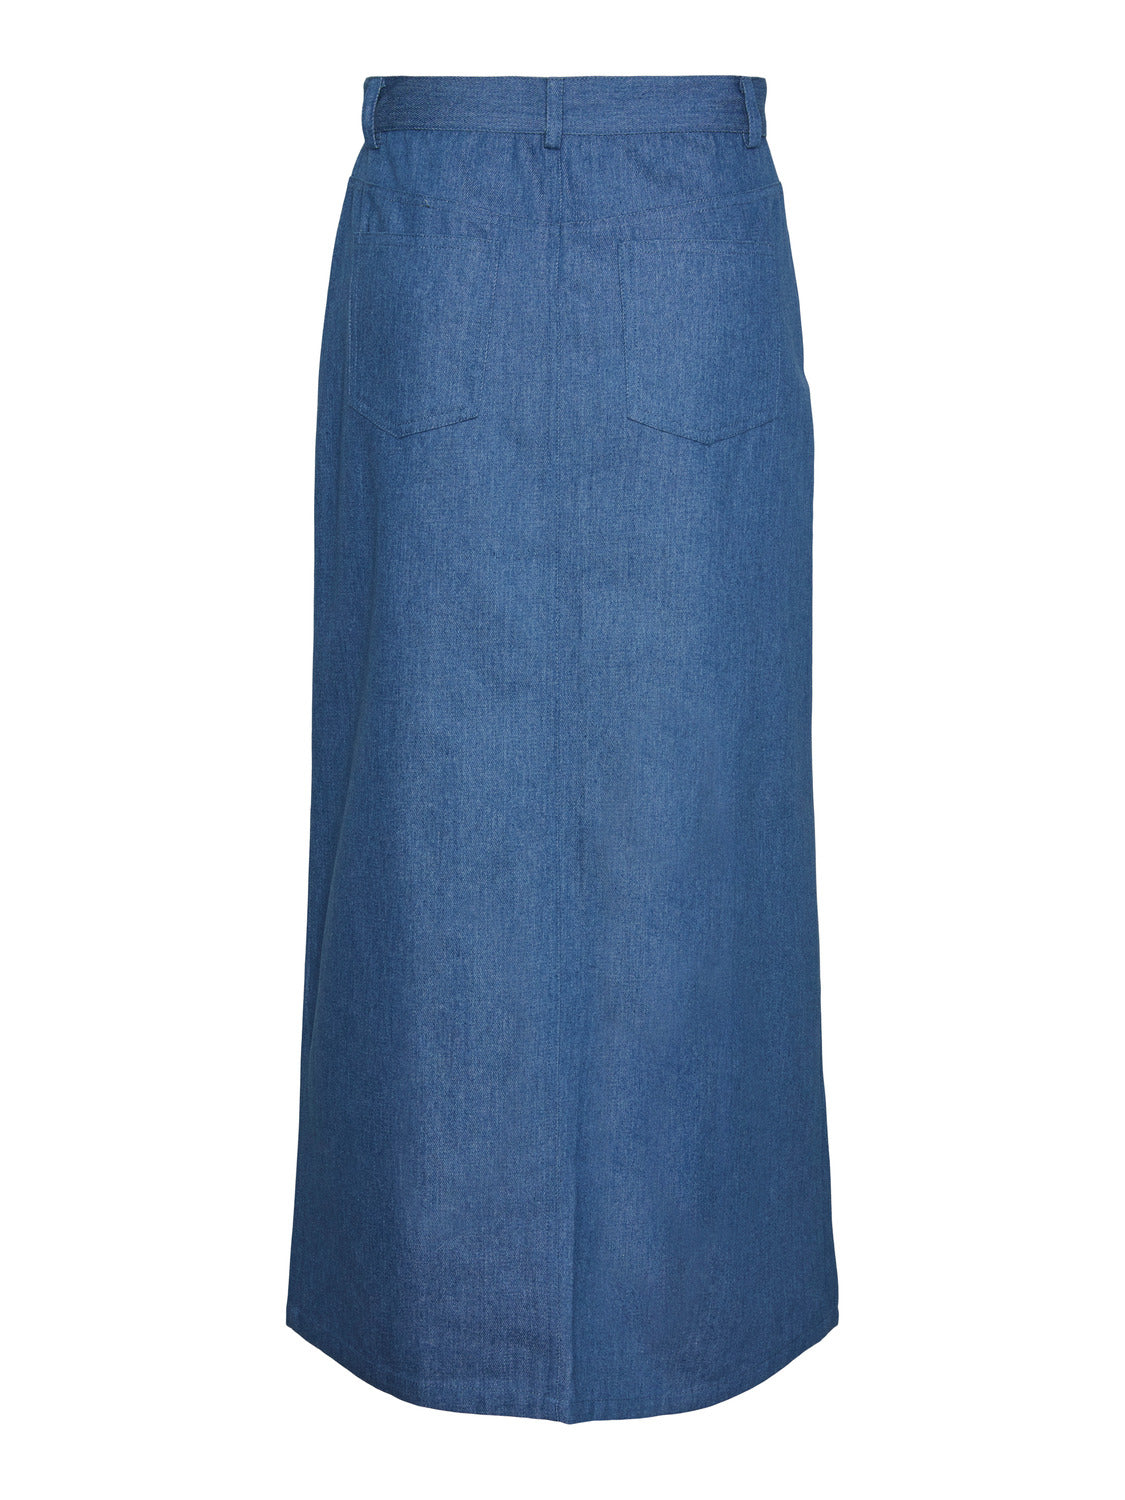 PCASTA Skirt - Medium Blue Denim